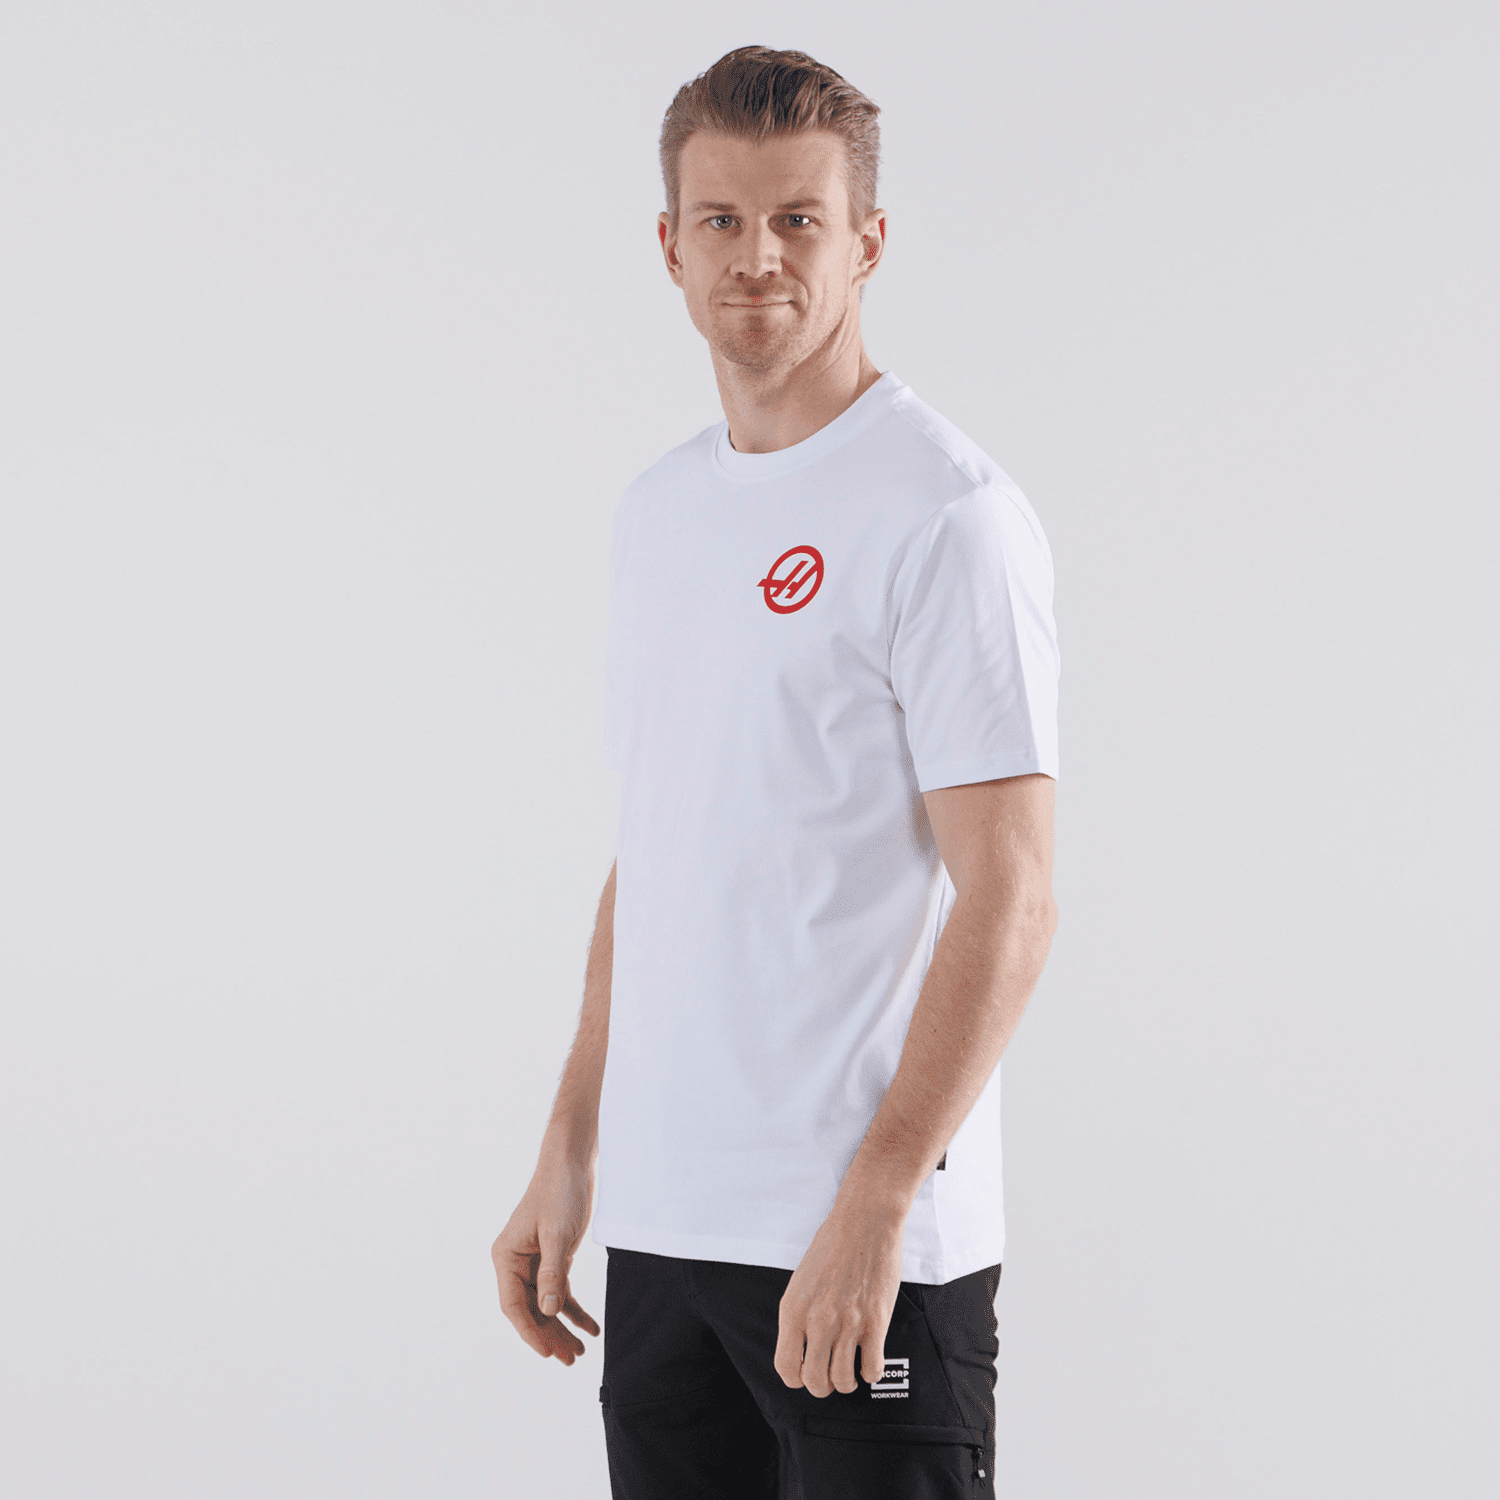 Haas Racing F1 Small Logo T-Shirt - Black/White